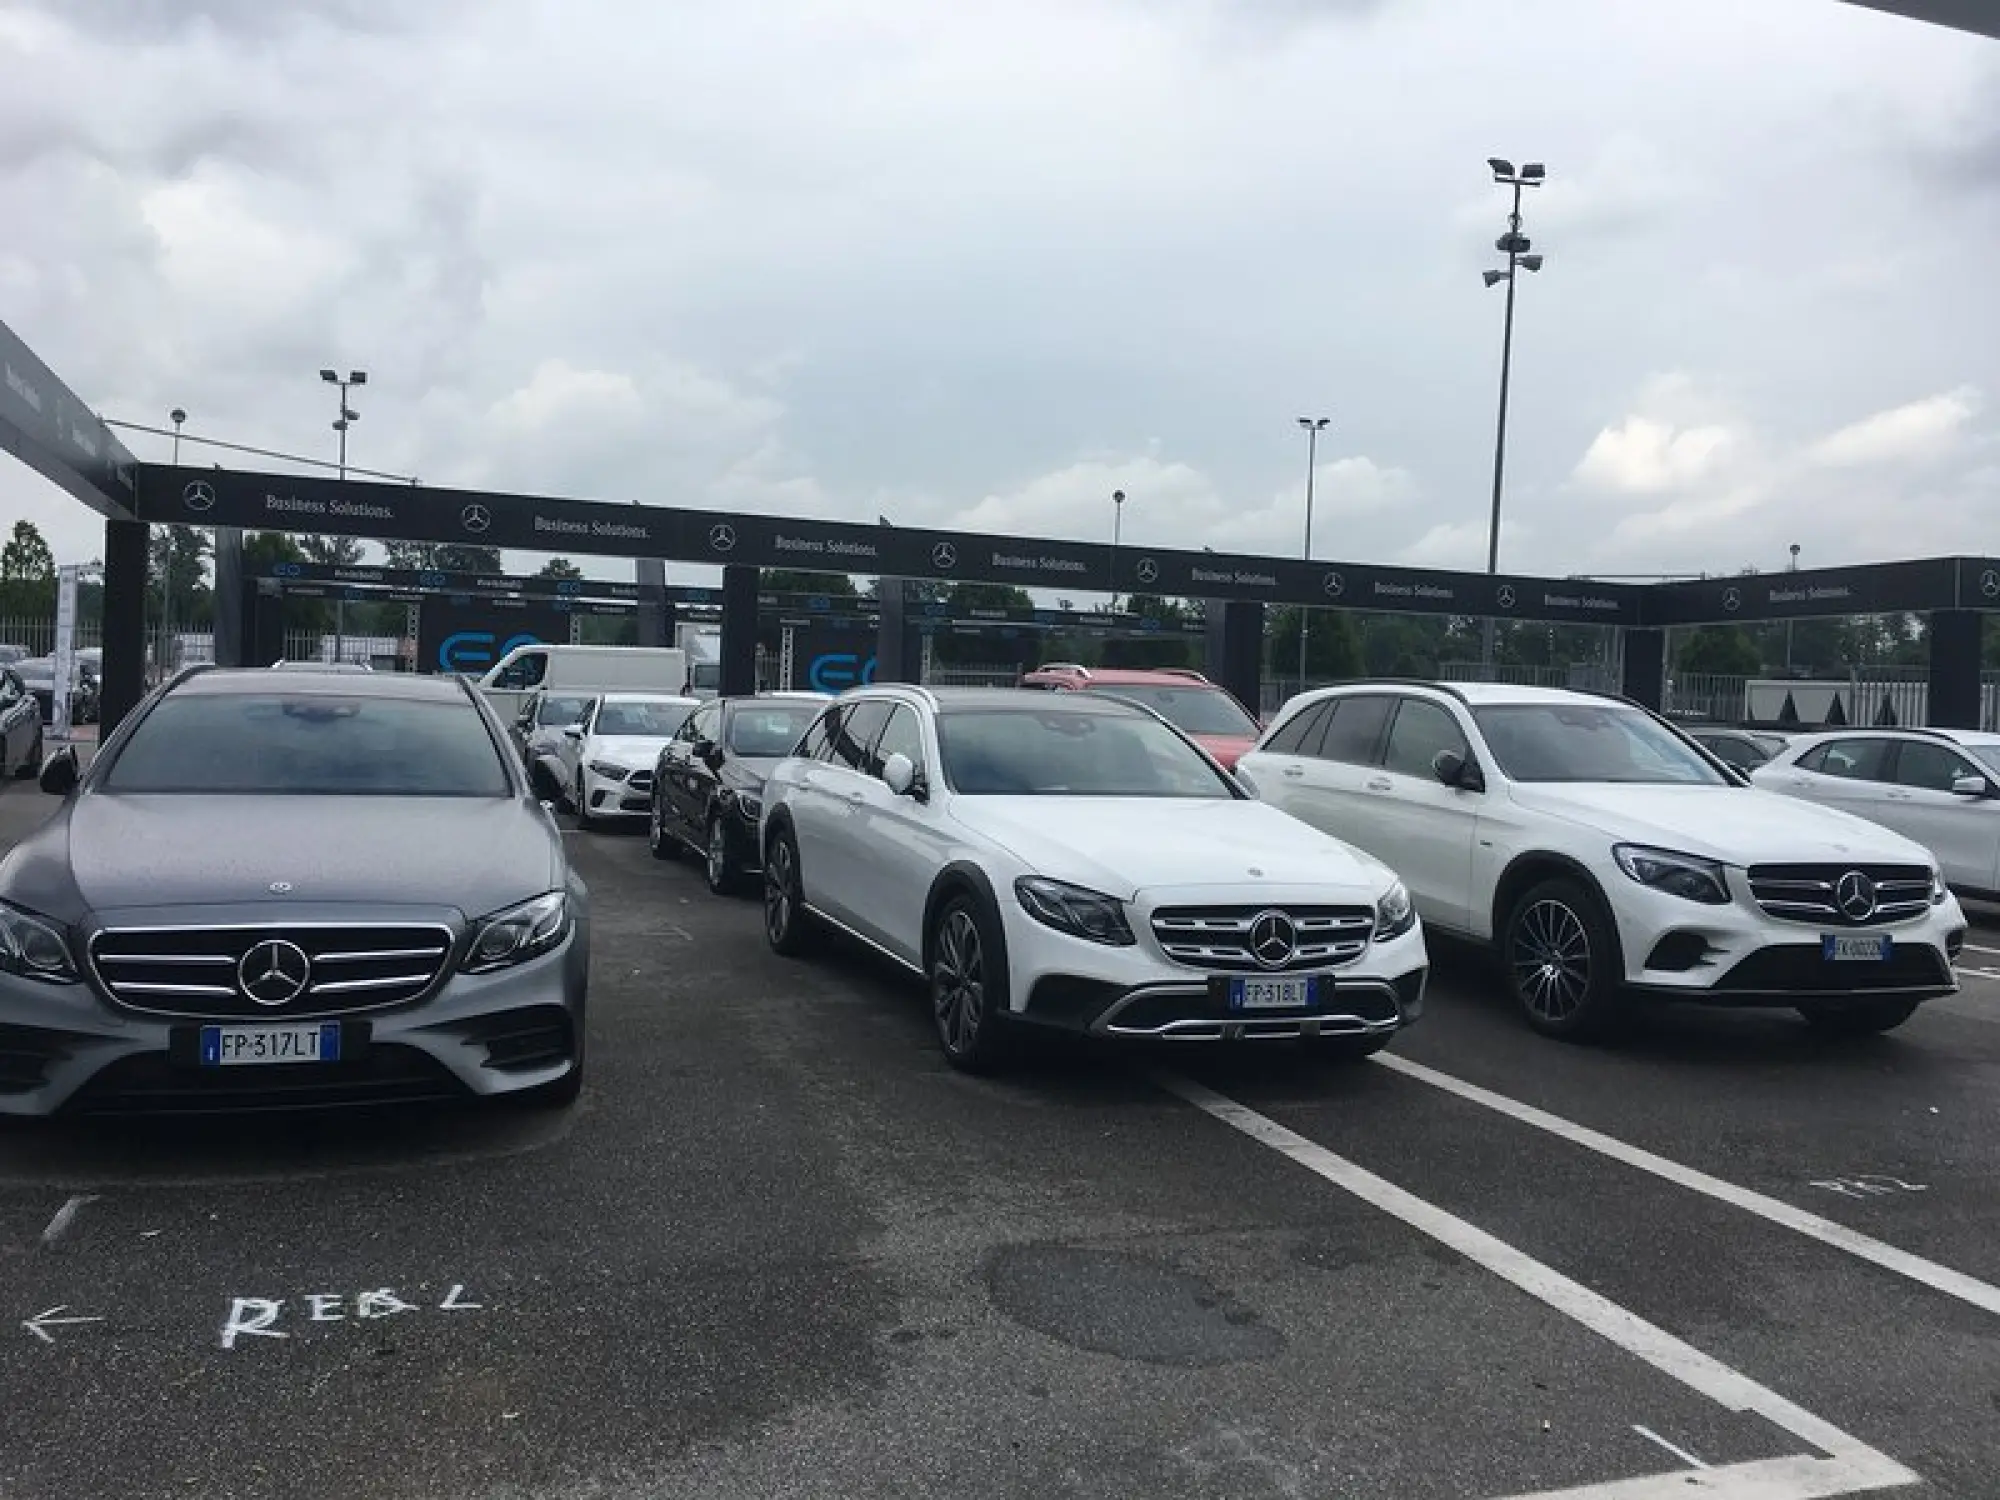 Mercedes - Company Car Drive 2018 - 2